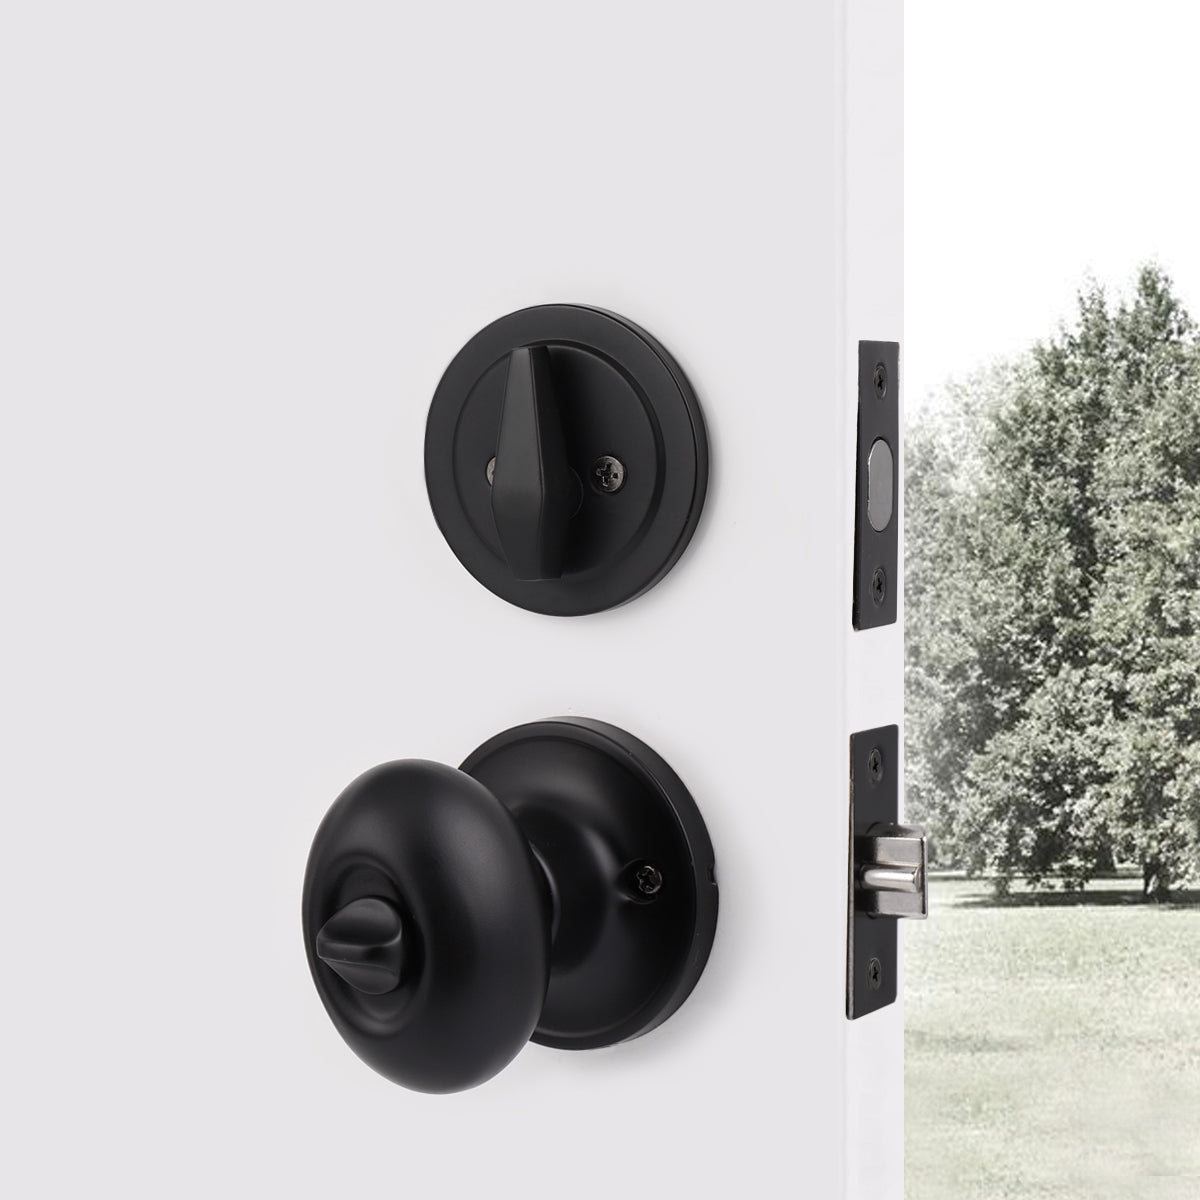 Keyed Alike Oval Egg Door Knobs with Single Cylinder Deadbolt Lock set Black Finish DL692ET01BK